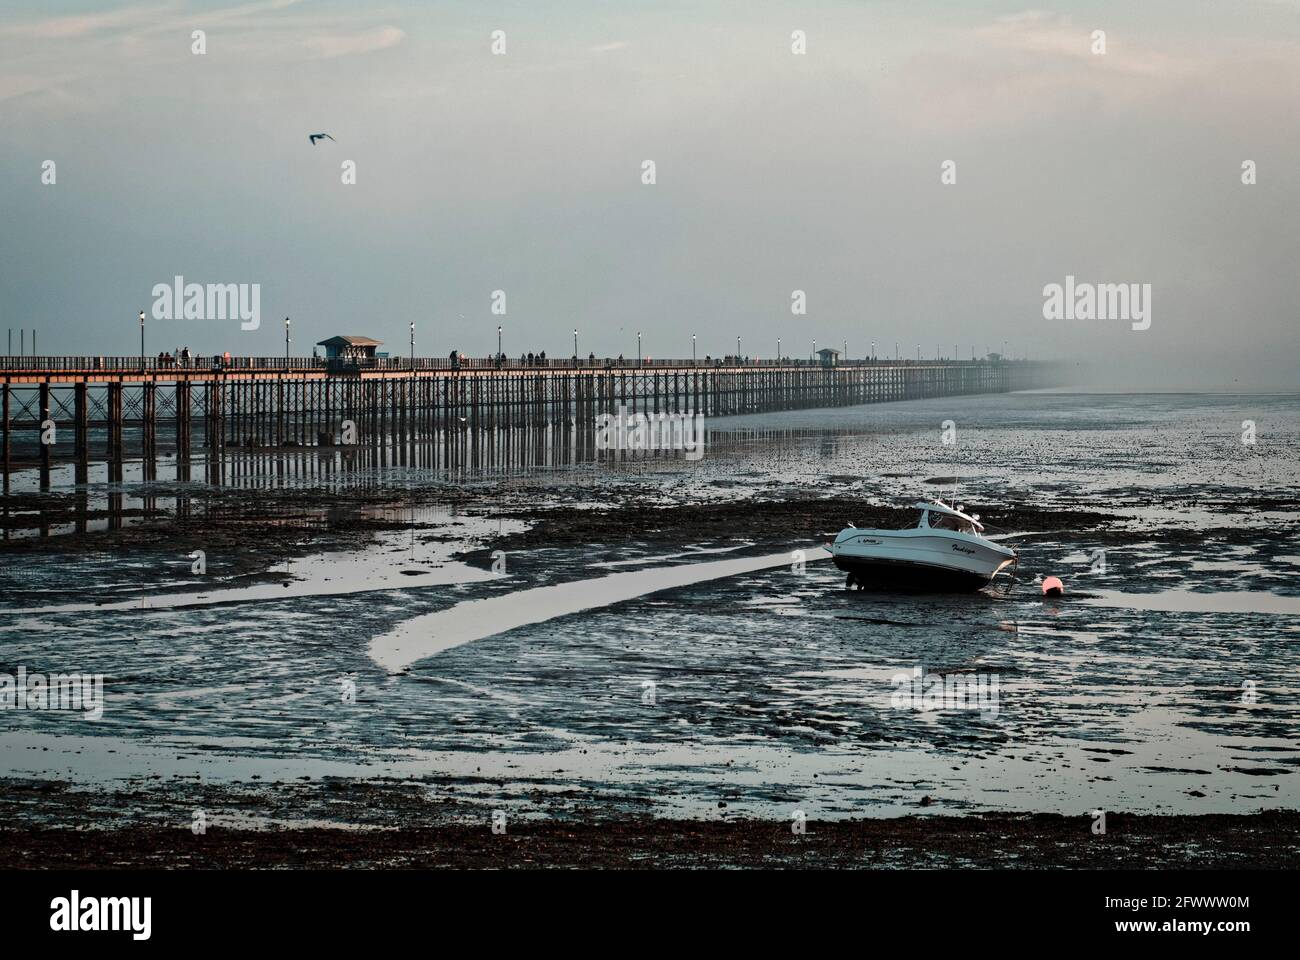 Southend Pier, il molo più lungo del mondo, a 1.34 miglia o 2.16 km, raggiunge l'estuario del Tamigi, Southend-on-Sea, Essex, Gran Bretagna Foto Stock